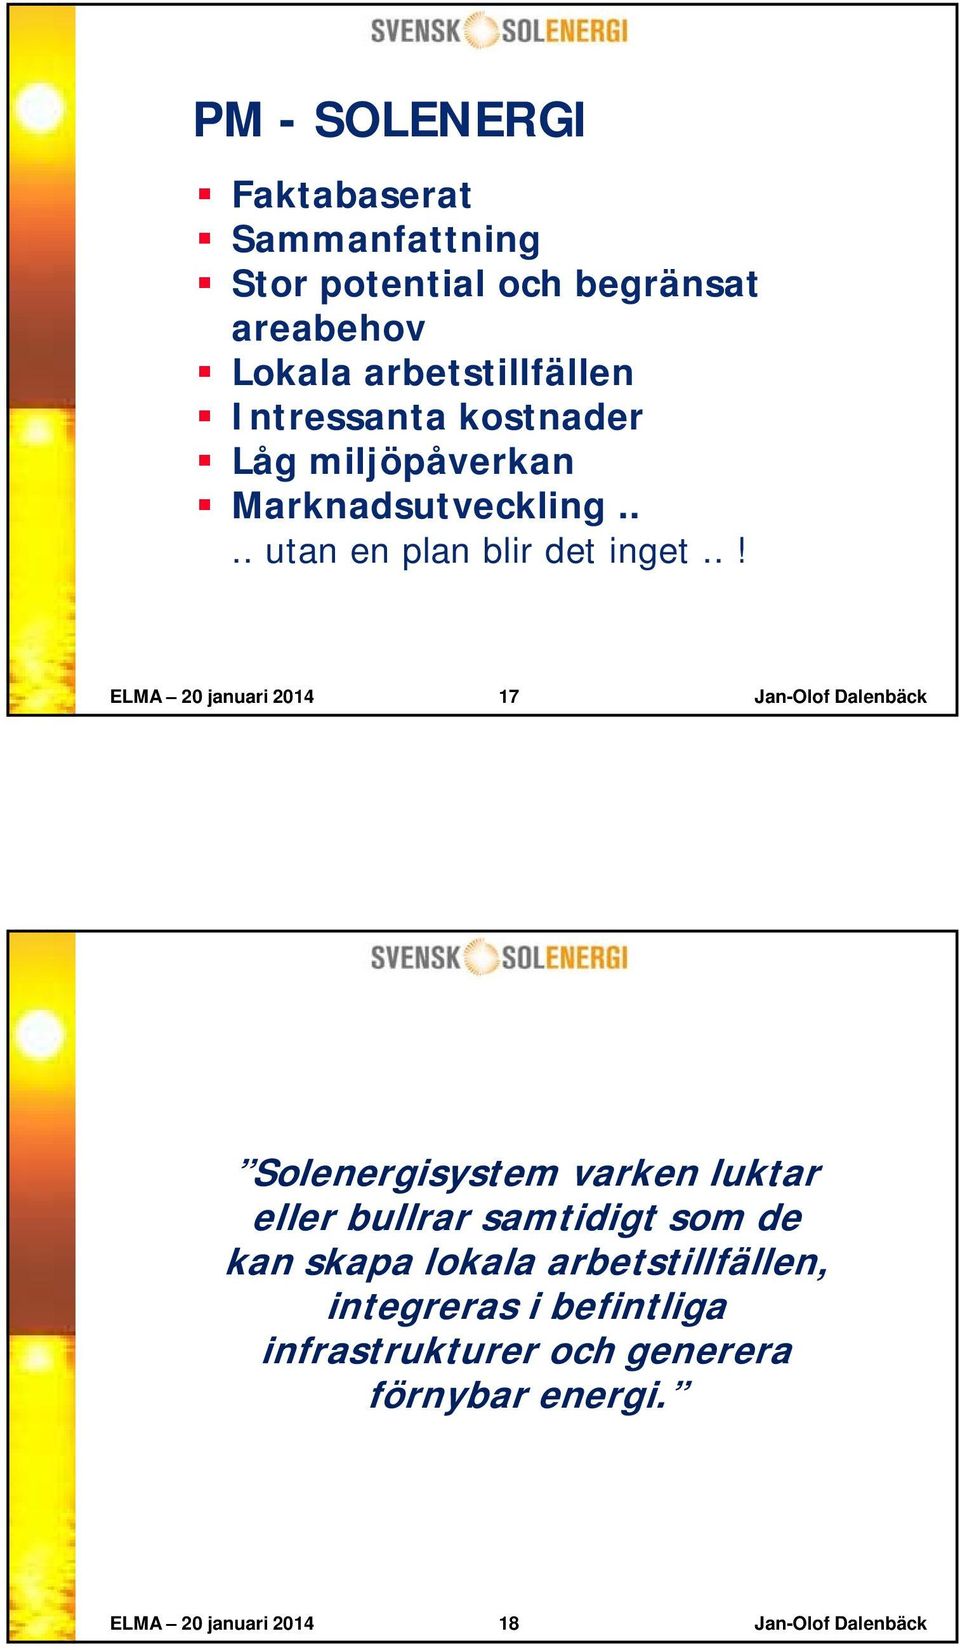 .! ELMA 20 januari 2014 17 Jan-Olof Dalenbäck Solenergisystem varken luktar eller bullrar samtidigt som de kan